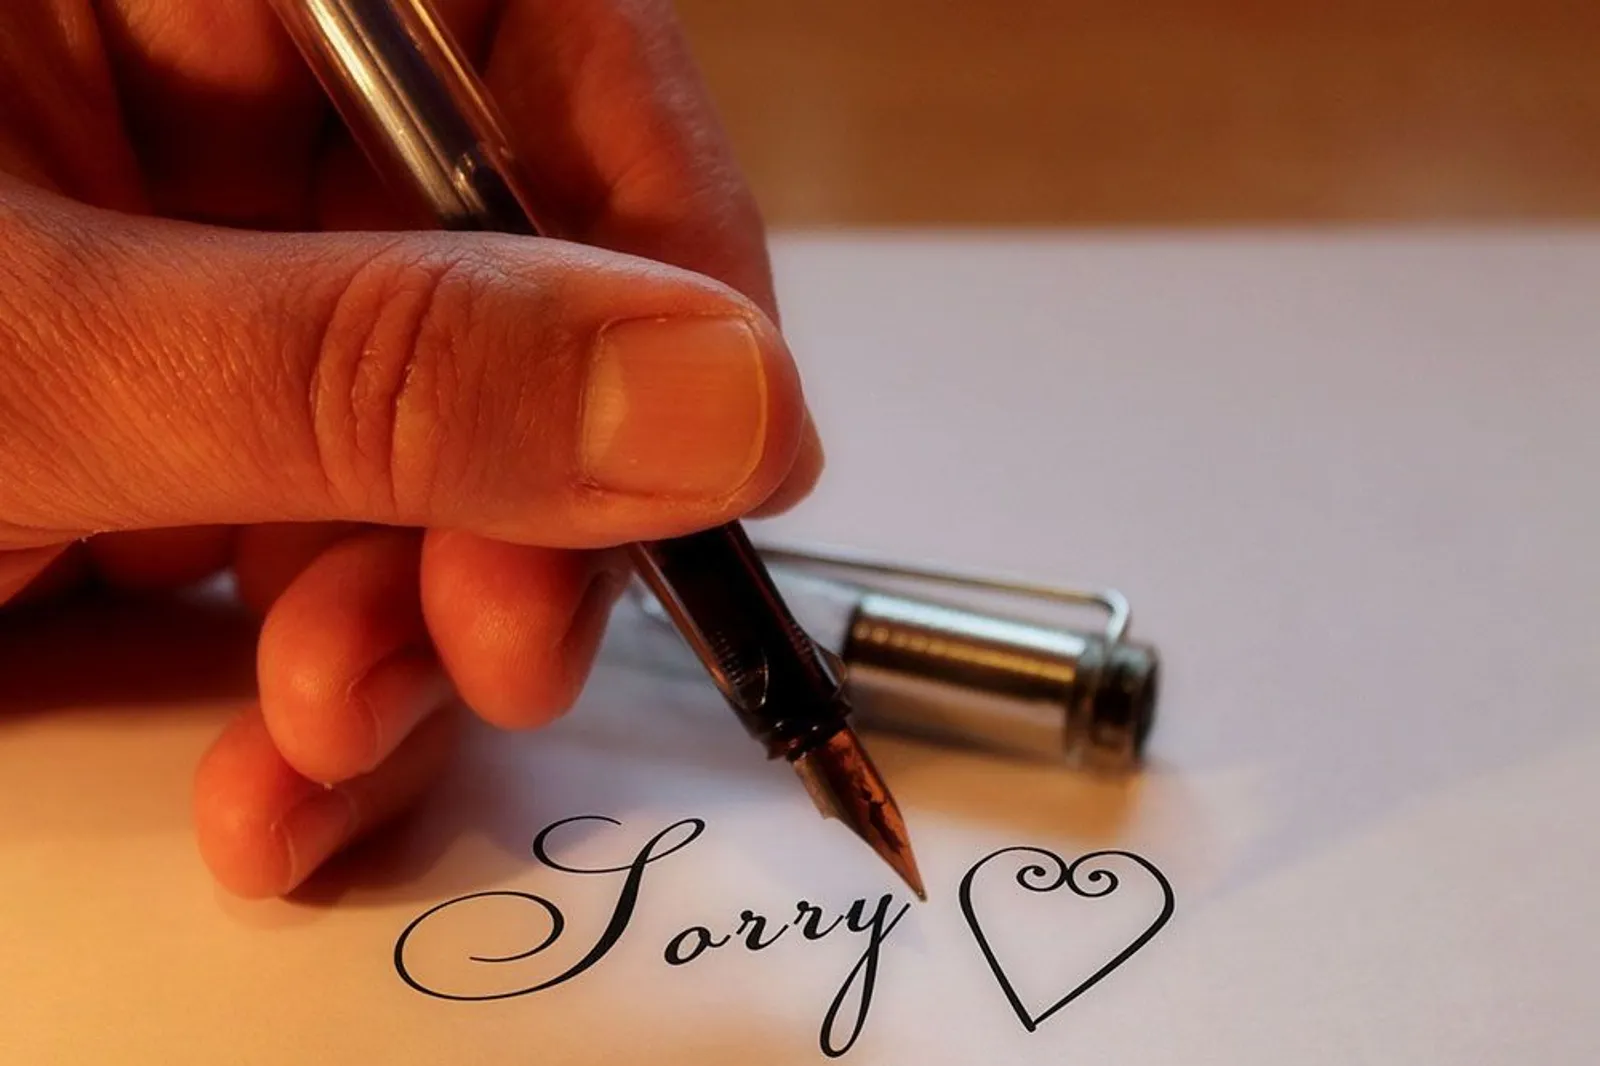 20 Kata-Kata Maaf untuk Pacar yang Sedang Marah dan Ngambek